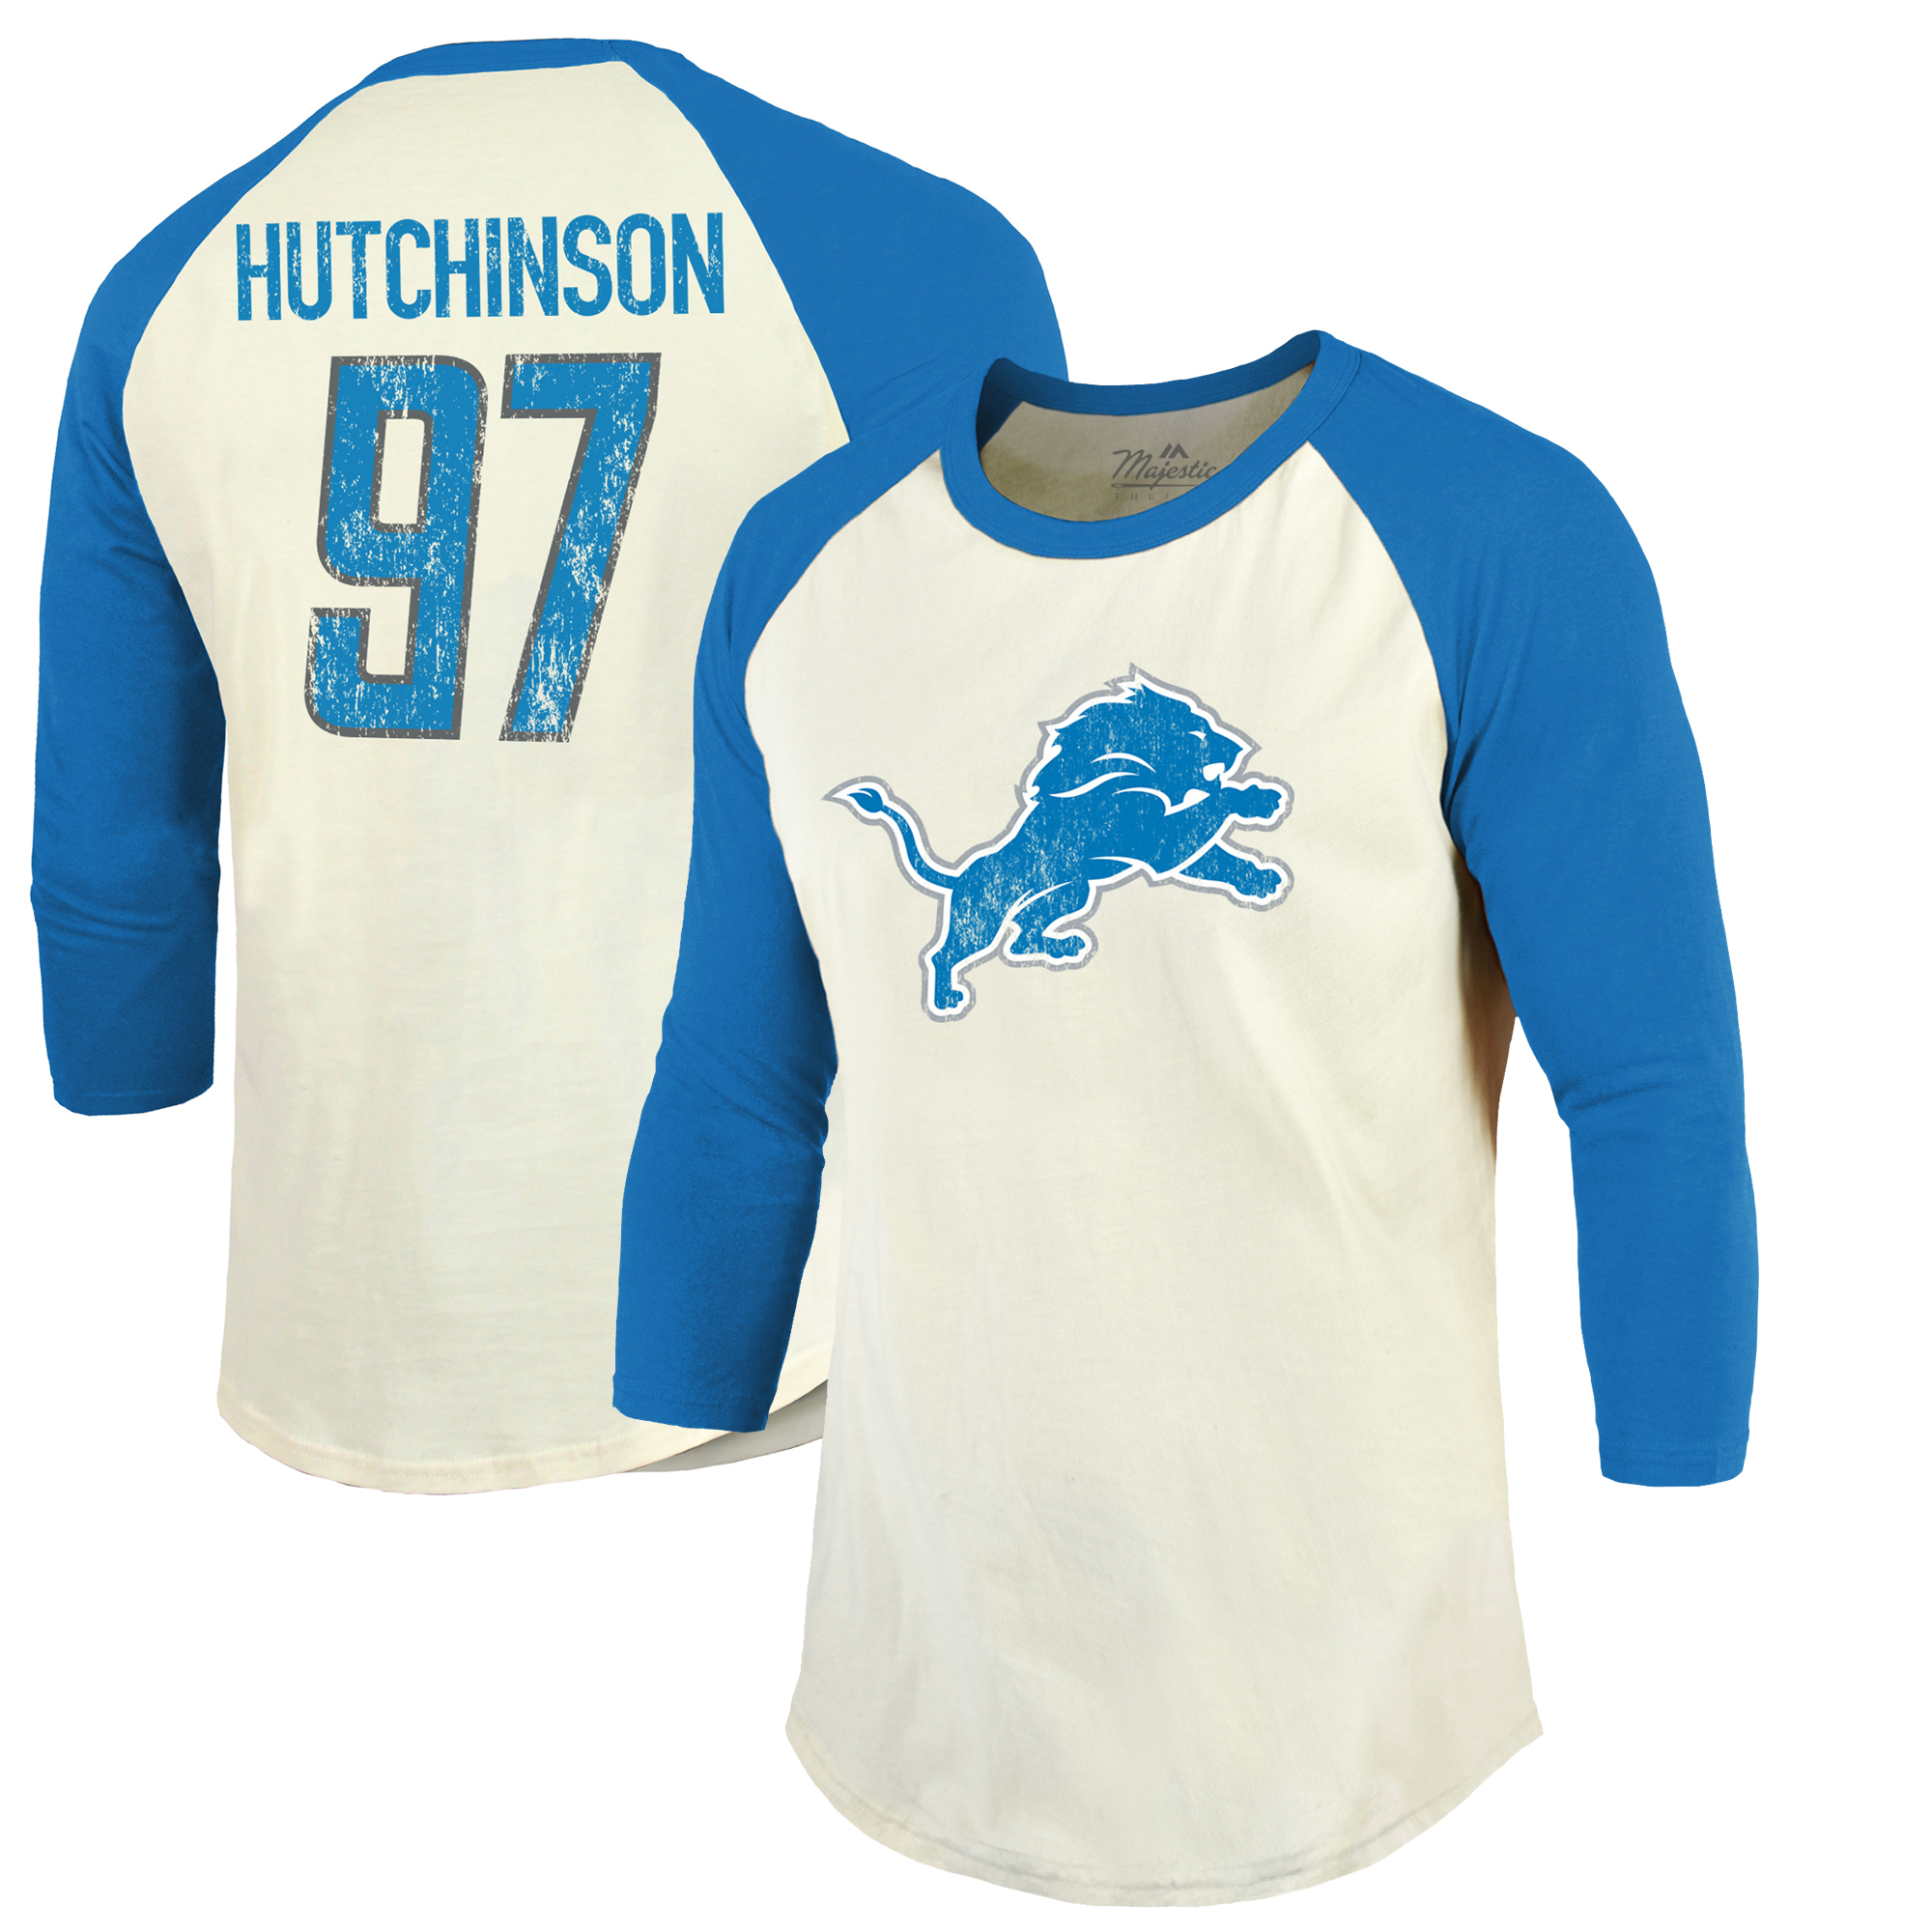 Herren Majestic Threads Aidan Hutchinson Creme/Blau Detroit Lions Vintage Spielername und Nummer 3/4-Ärmel tailliertes T-Shirt